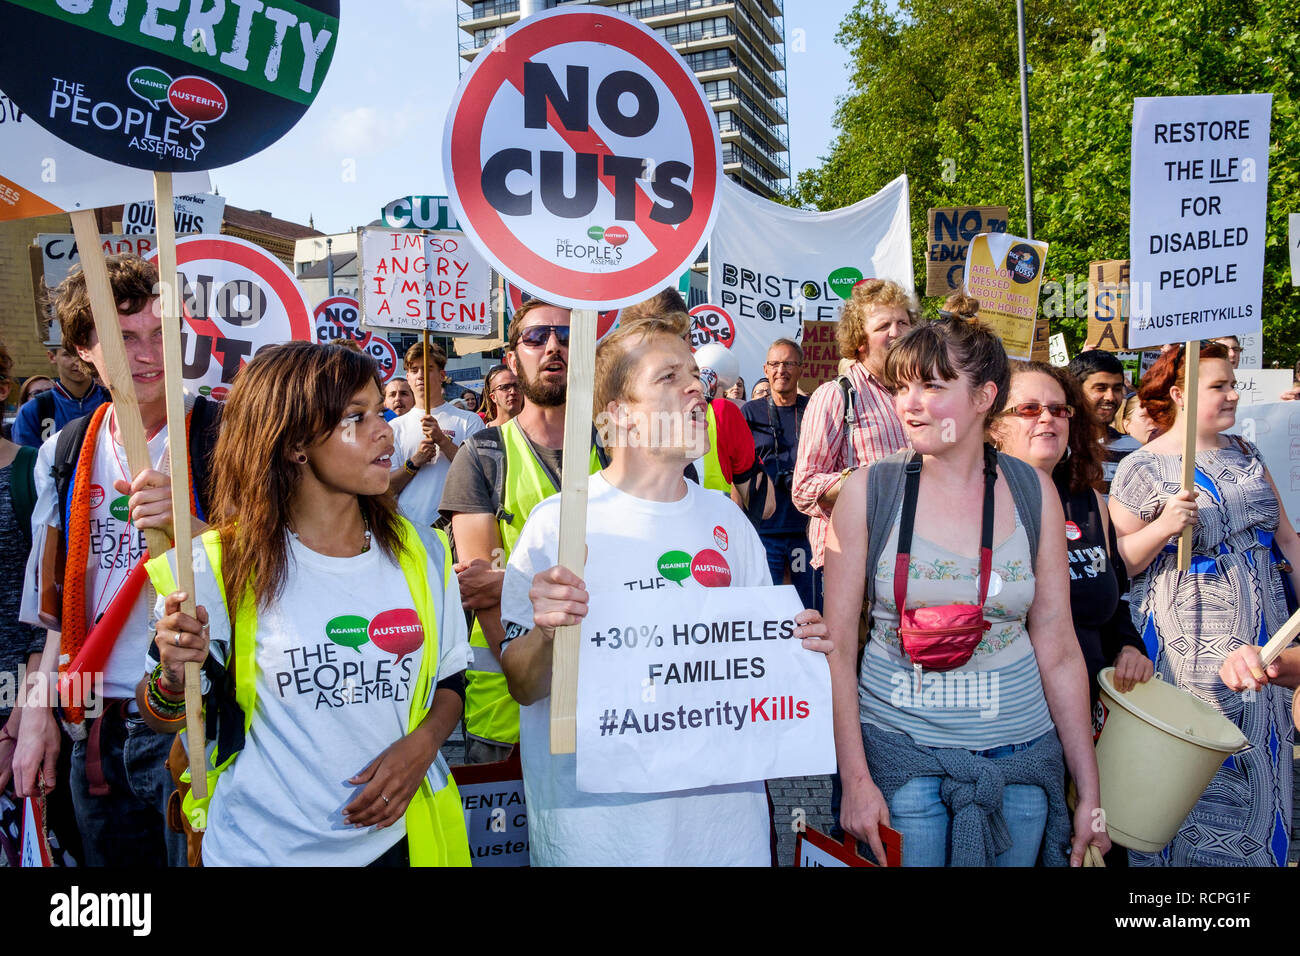 Les manifestants anti-austérité portant des pancartes et panneaux sont illustrés en prenant part à une manifestation anti-austérité et de démonstration à Bristol. Banque D'Images